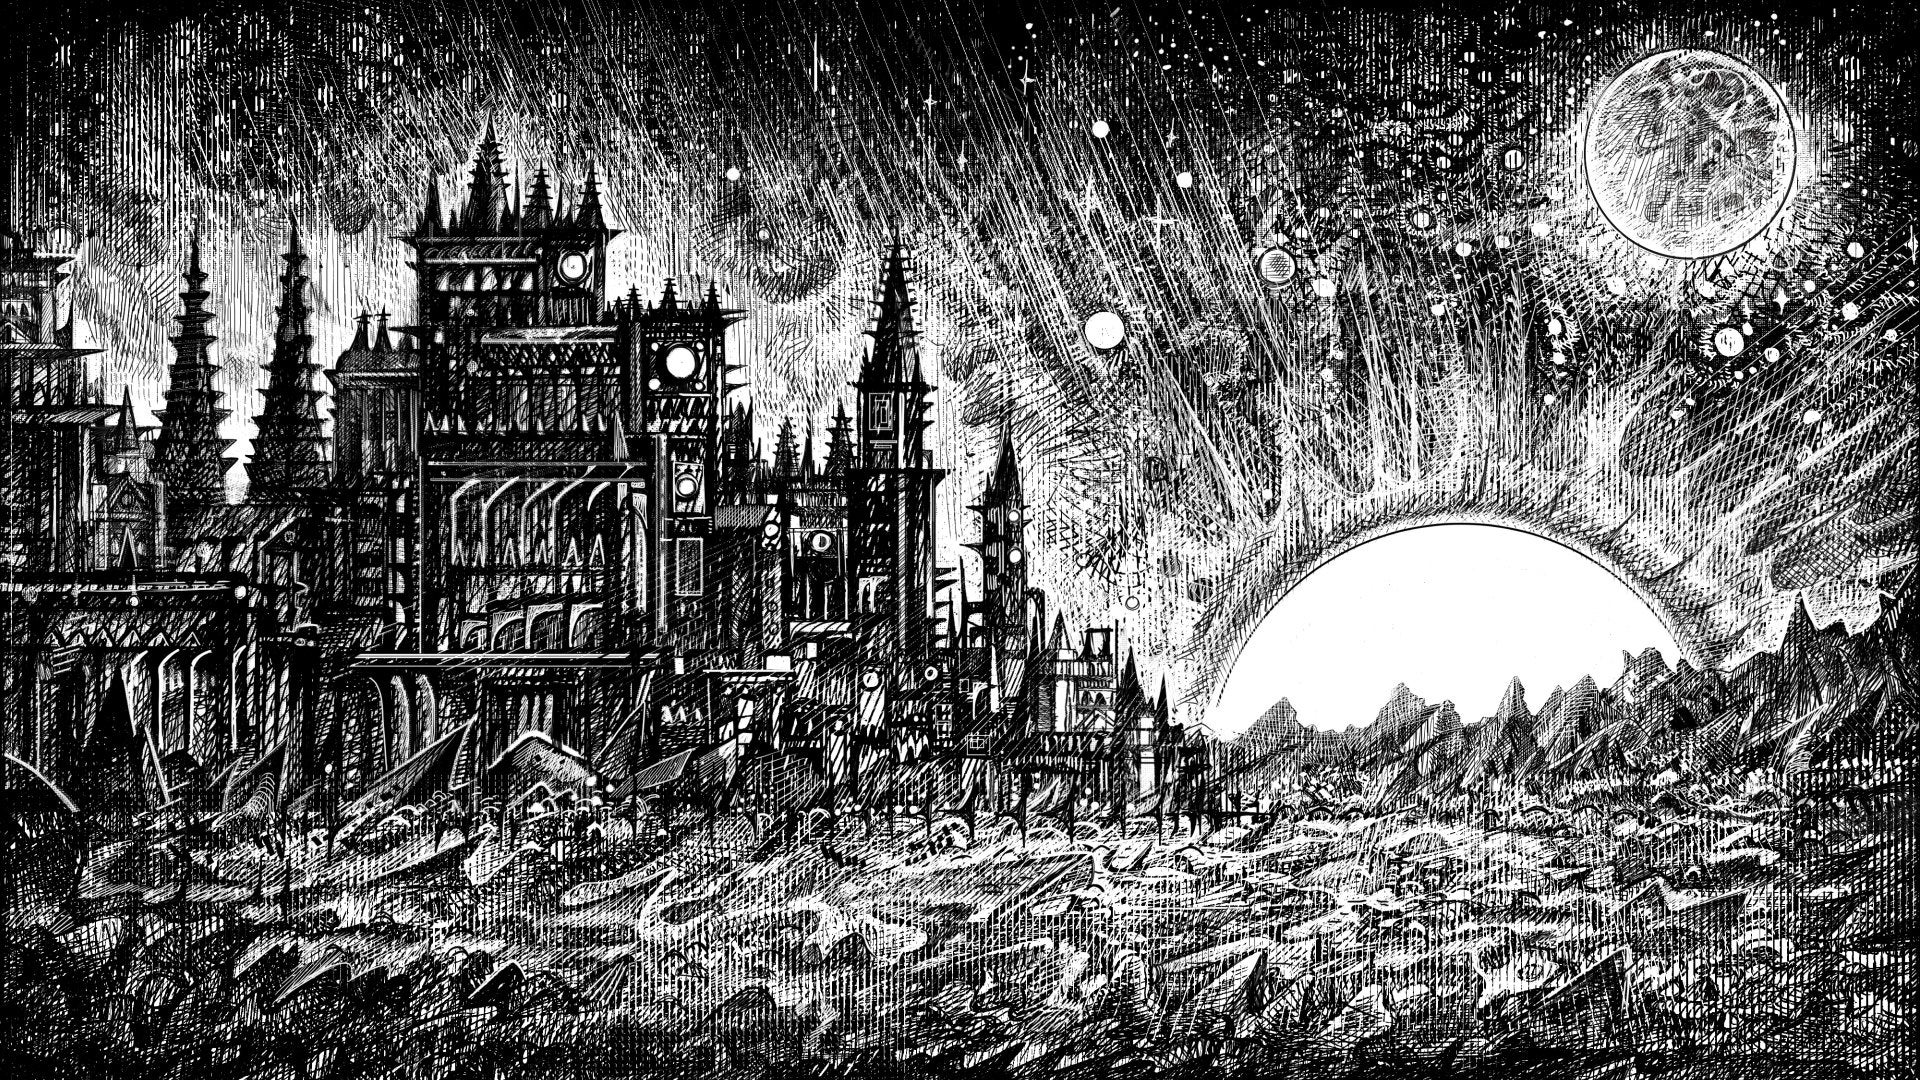 Обложка игры Изгнанное хранилище в готическом черно-белом стиле карандашной графики с заостренным городом слева, луной и ярким солнцем справа, а также звездами на небе.